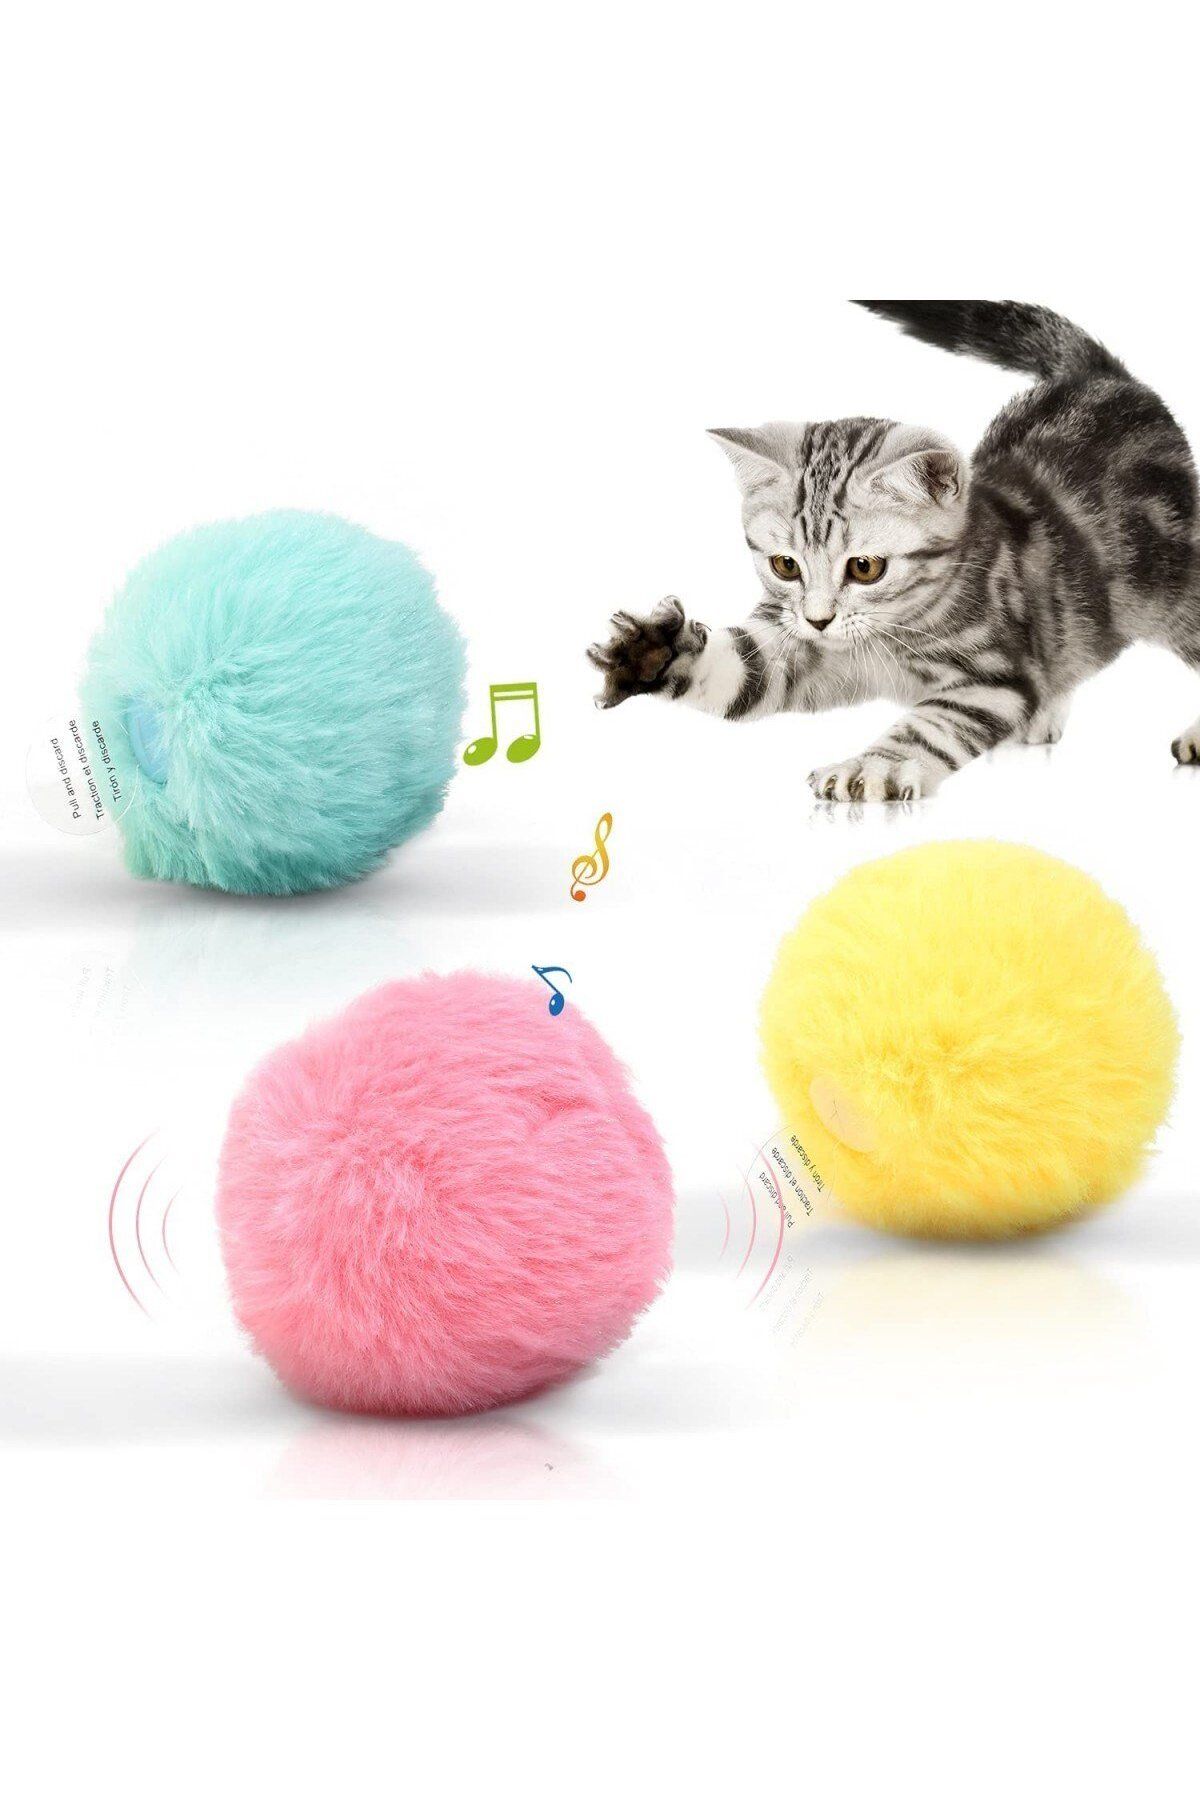 BUSHOP Peluş Kedi Oyuncak Interaktif Kedi Oyuncağı Gerçek Kuş Sesli - Sarı